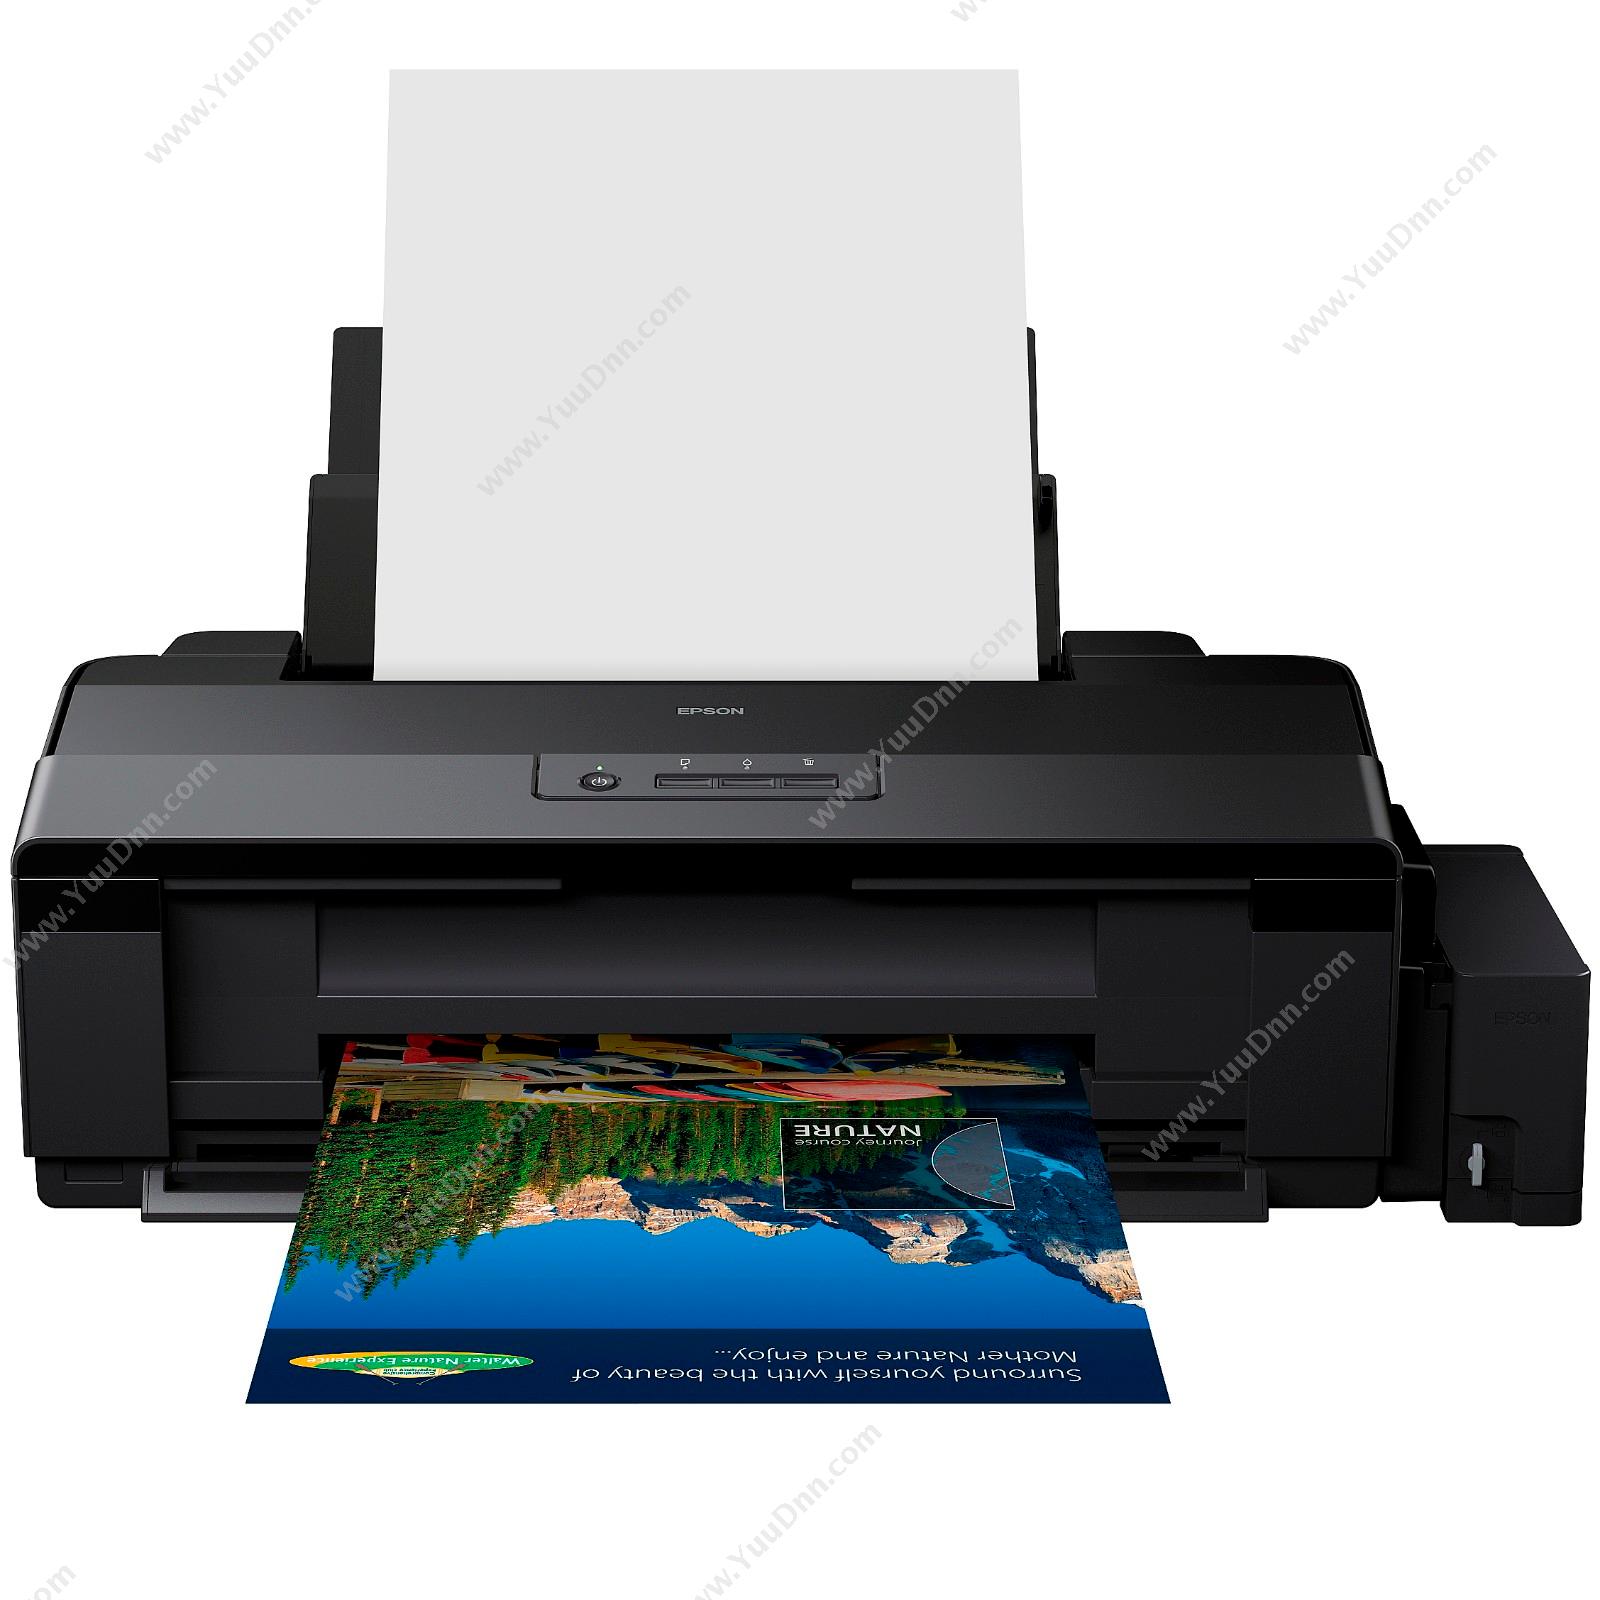 爱普生 EpsonL1800A4喷墨打印机